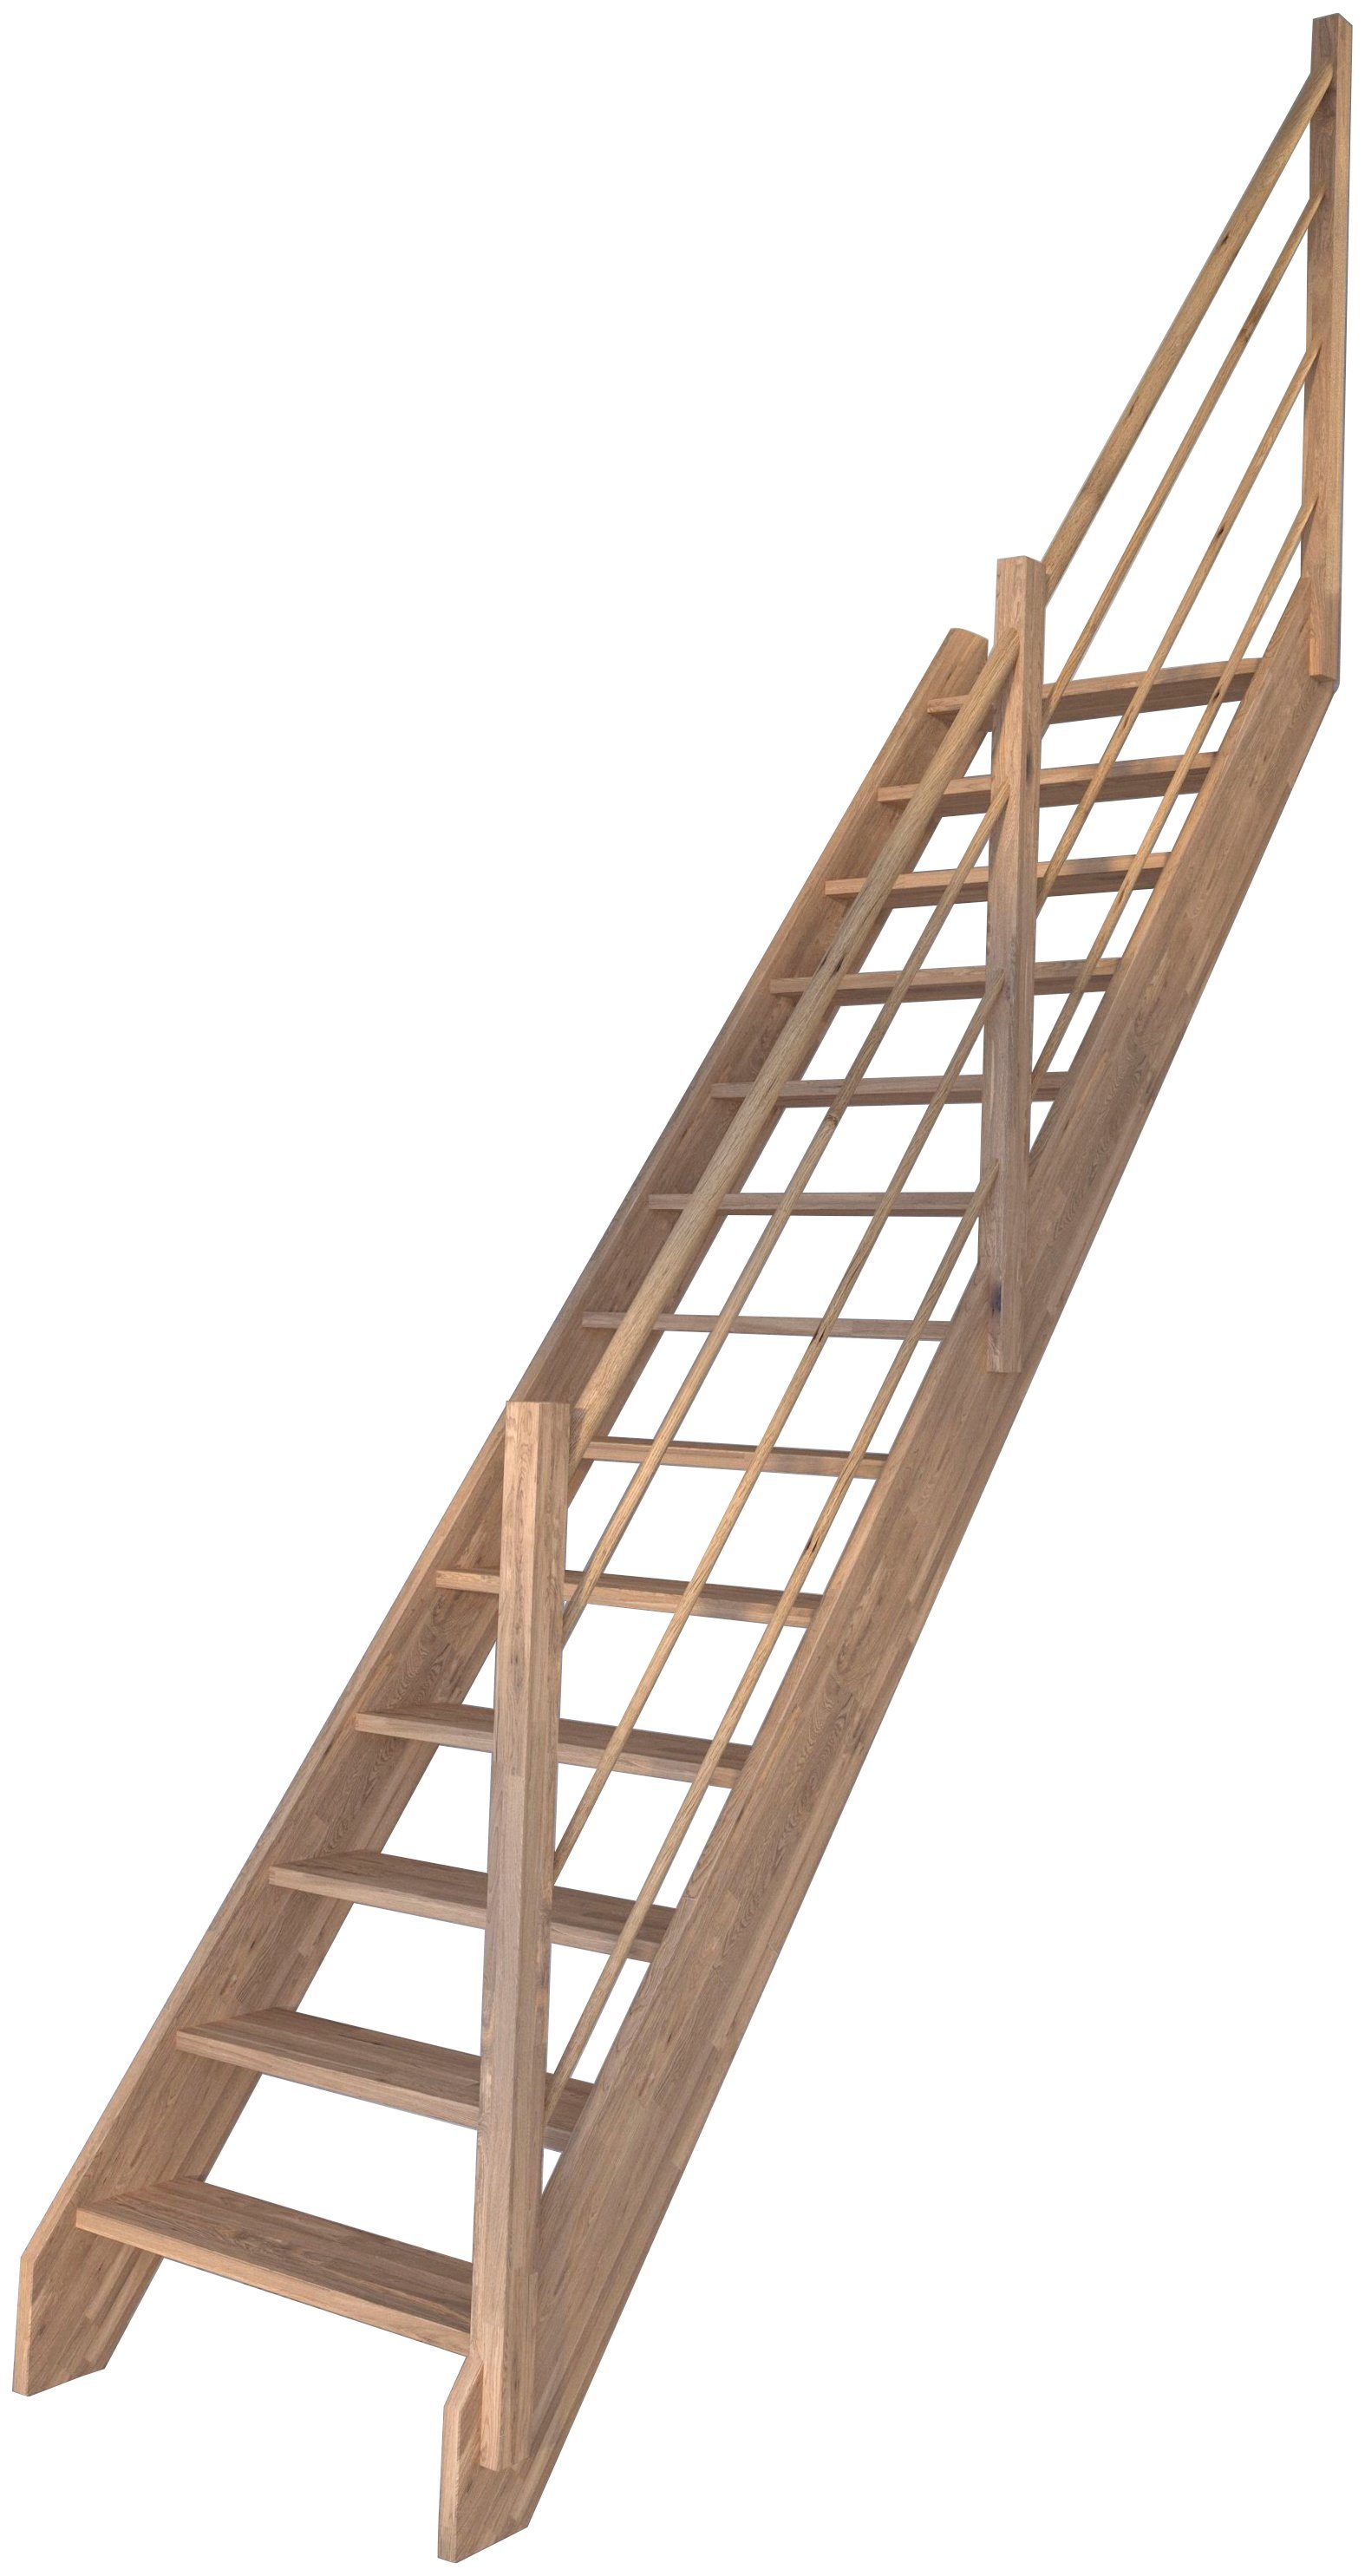 Starwood Raumspartreppe Massivholz Rhodos, Holz-Holz Design Geländer Rechts, für Geschosshöhen bis 300 cm, Stufen offen, Durchgehende Wangenteile